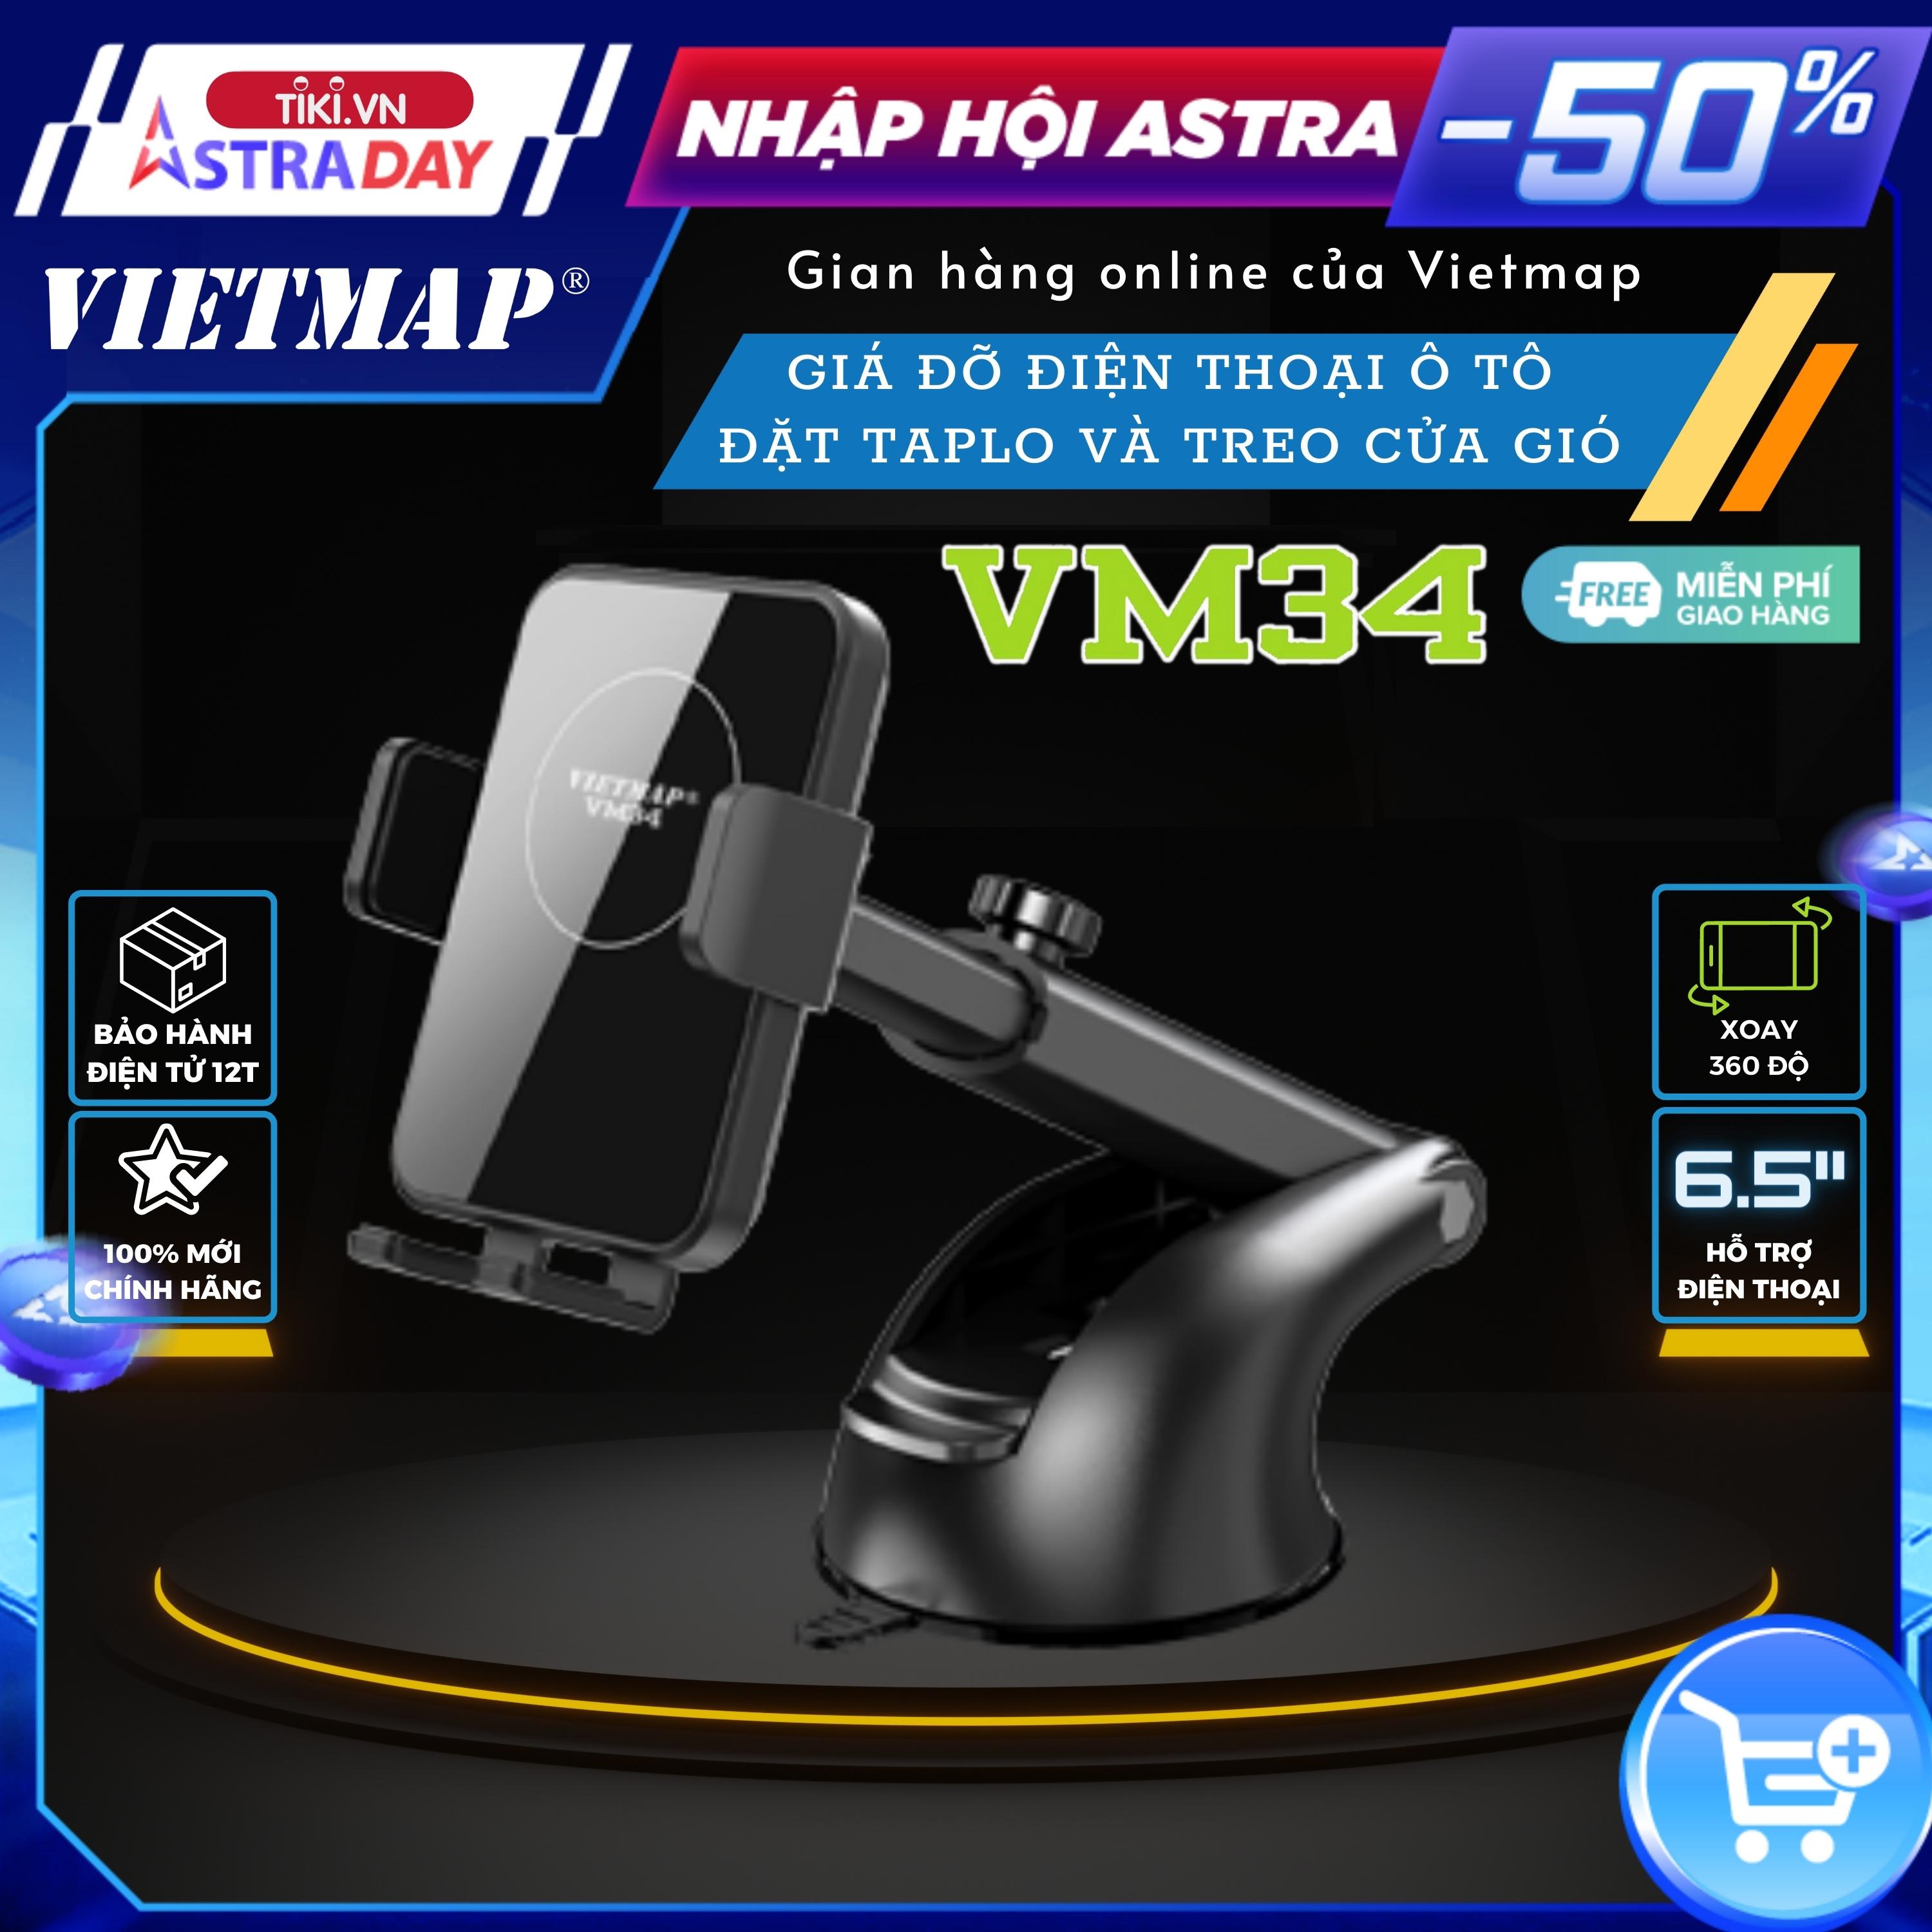 VIETMAP VM34 - Giá đỡ điện thoại di động trên ô tô - Hàng chính hãng